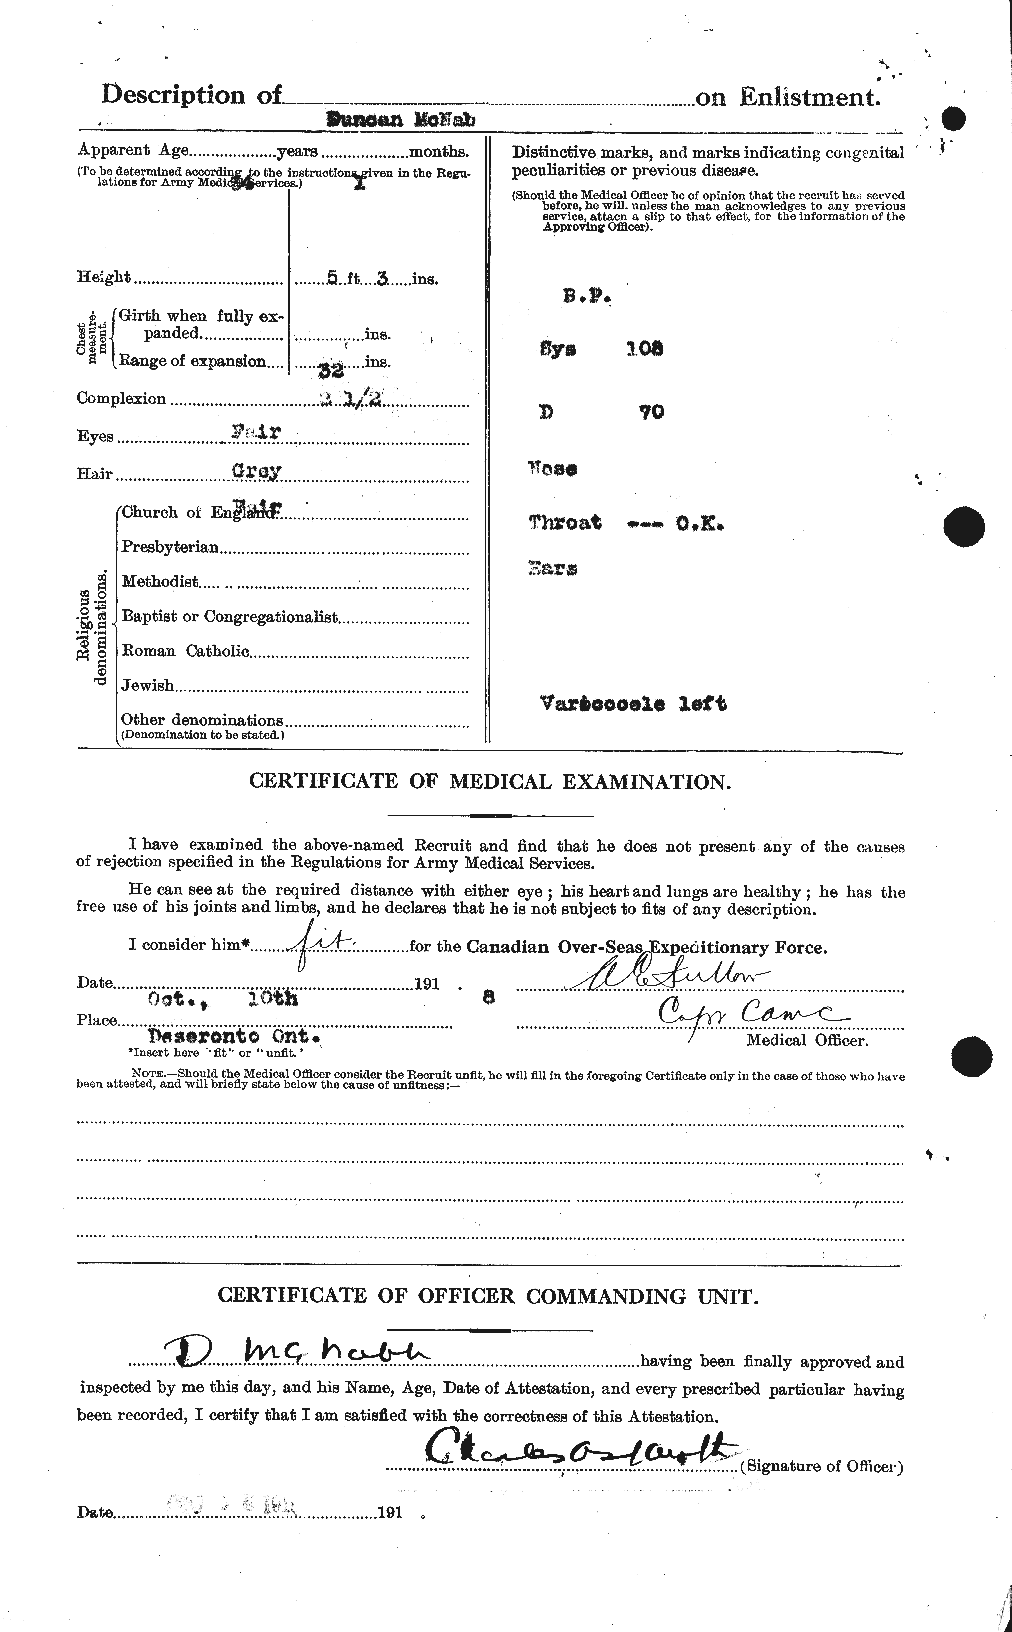 Dossiers du Personnel de la Première Guerre mondiale - CEC 539539b